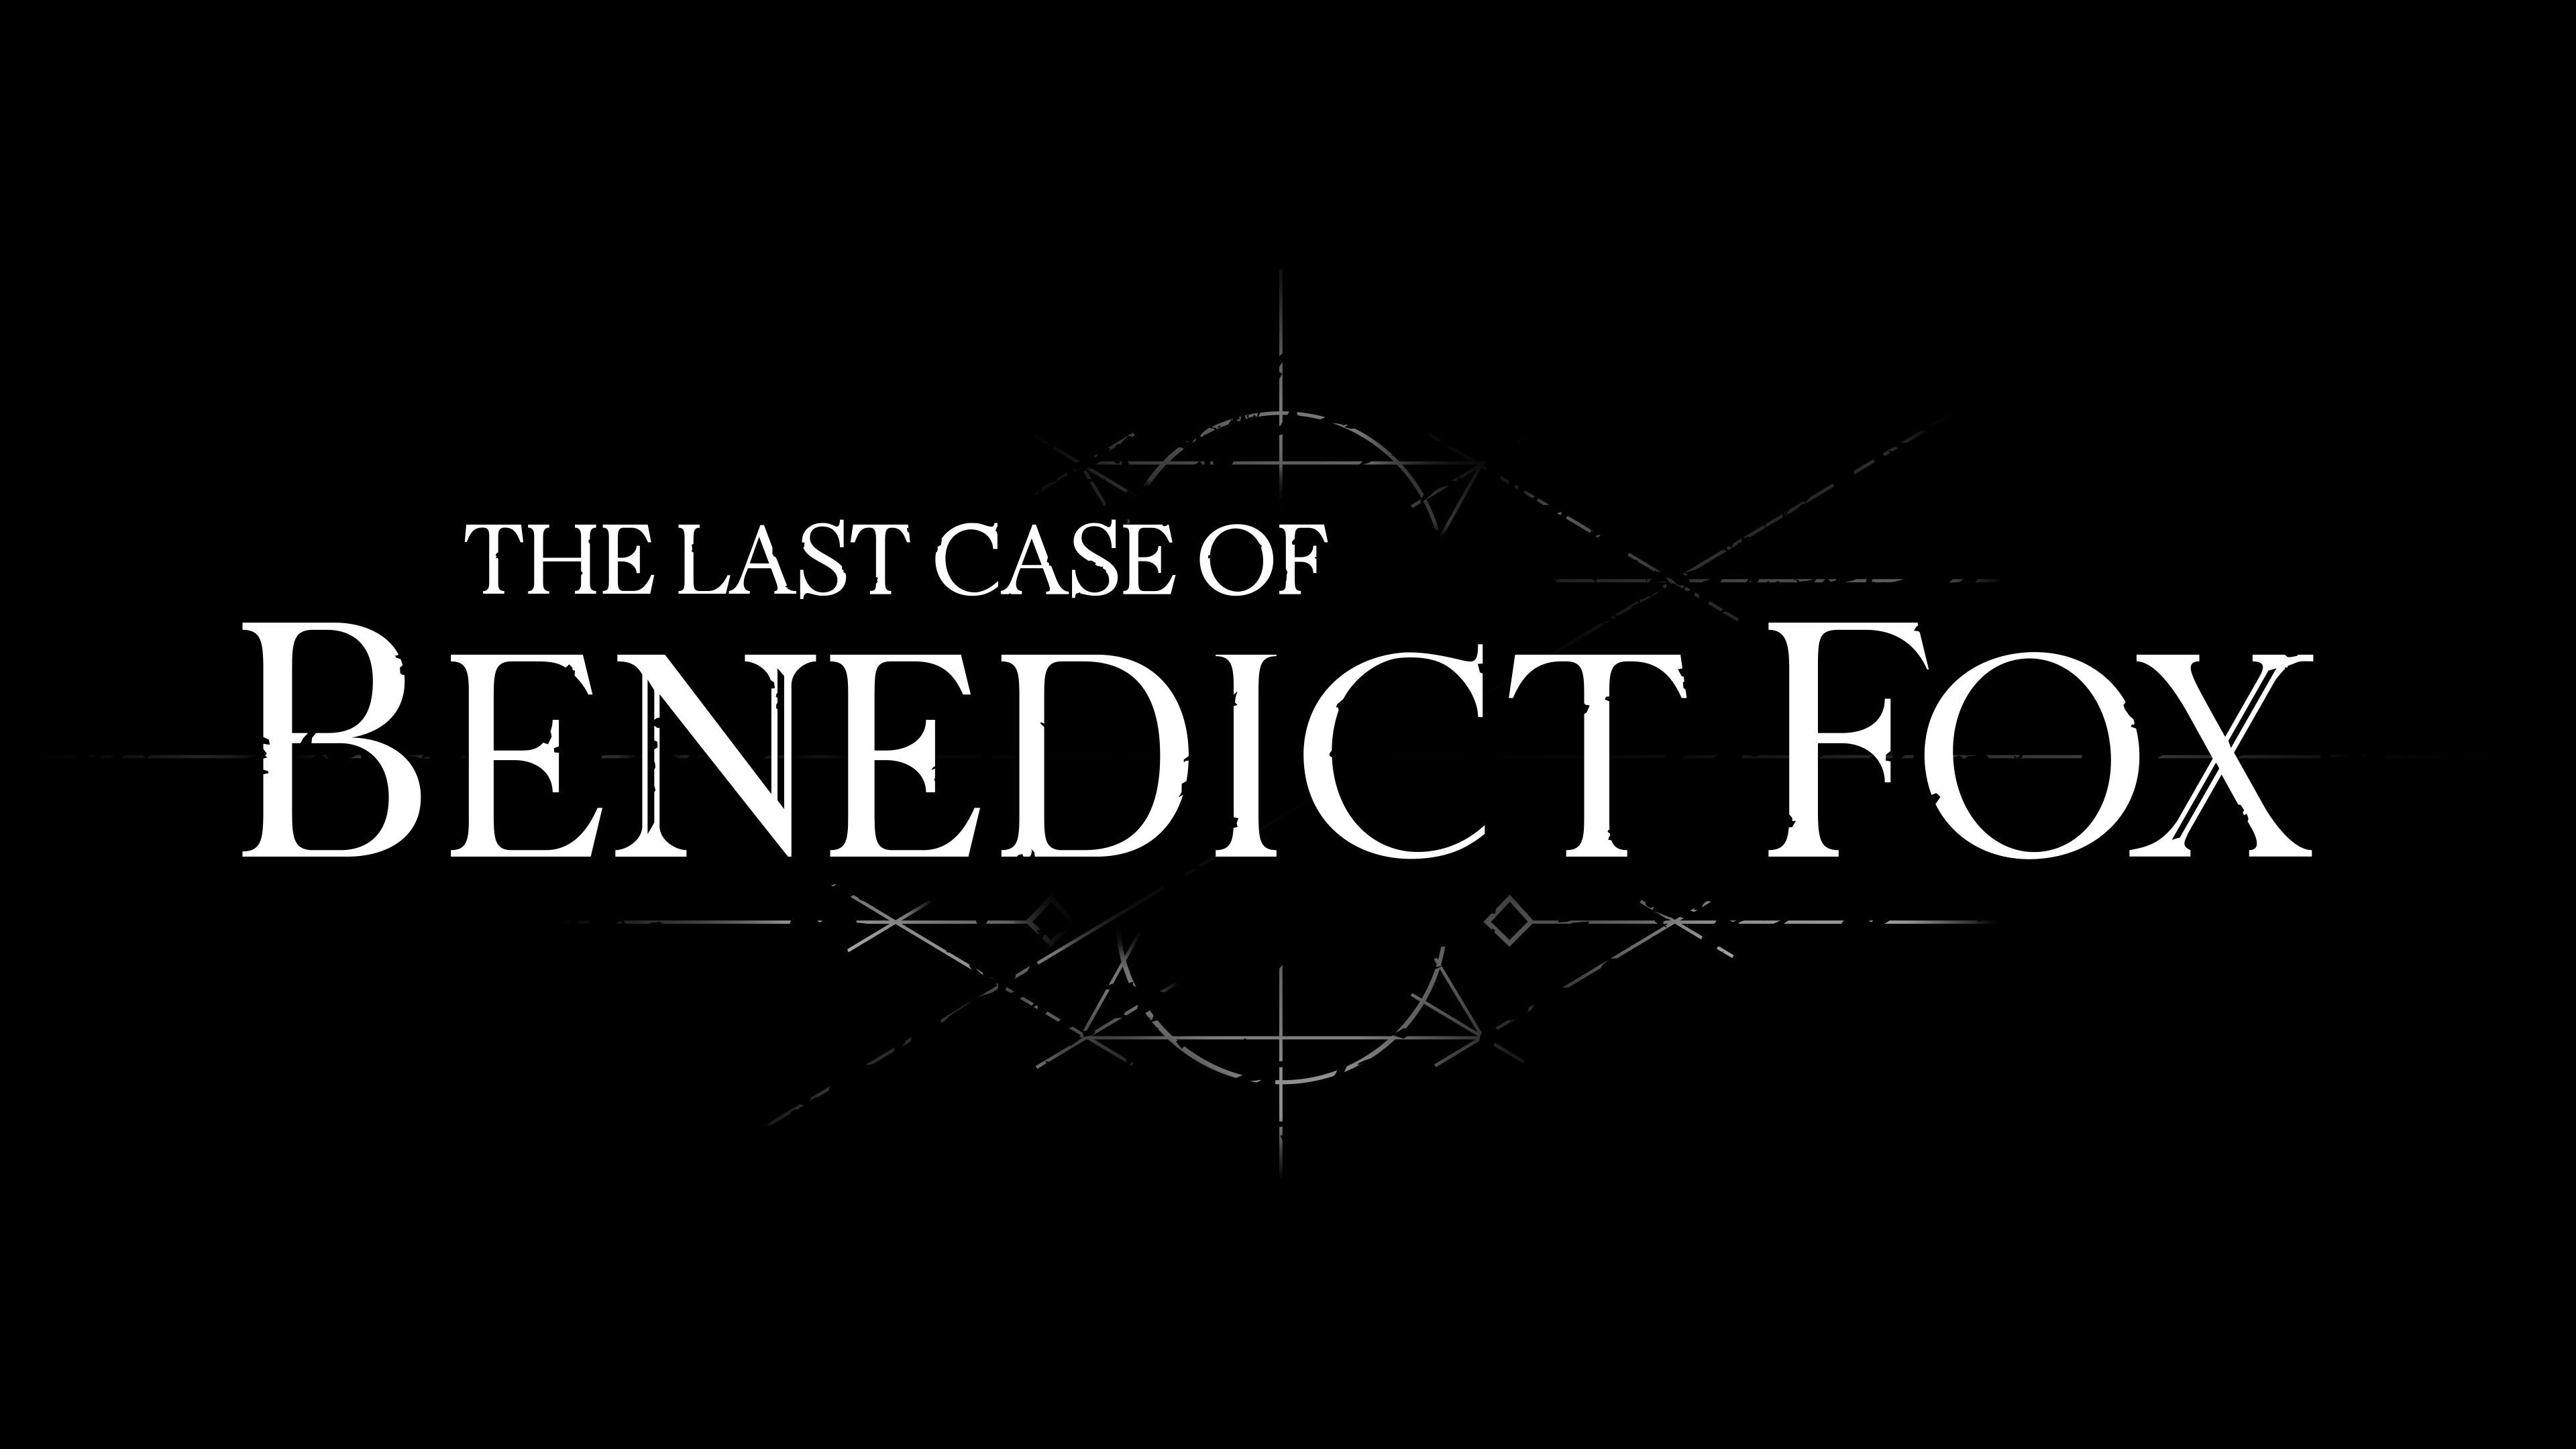 The Last Case of Benedict Fox em 4K